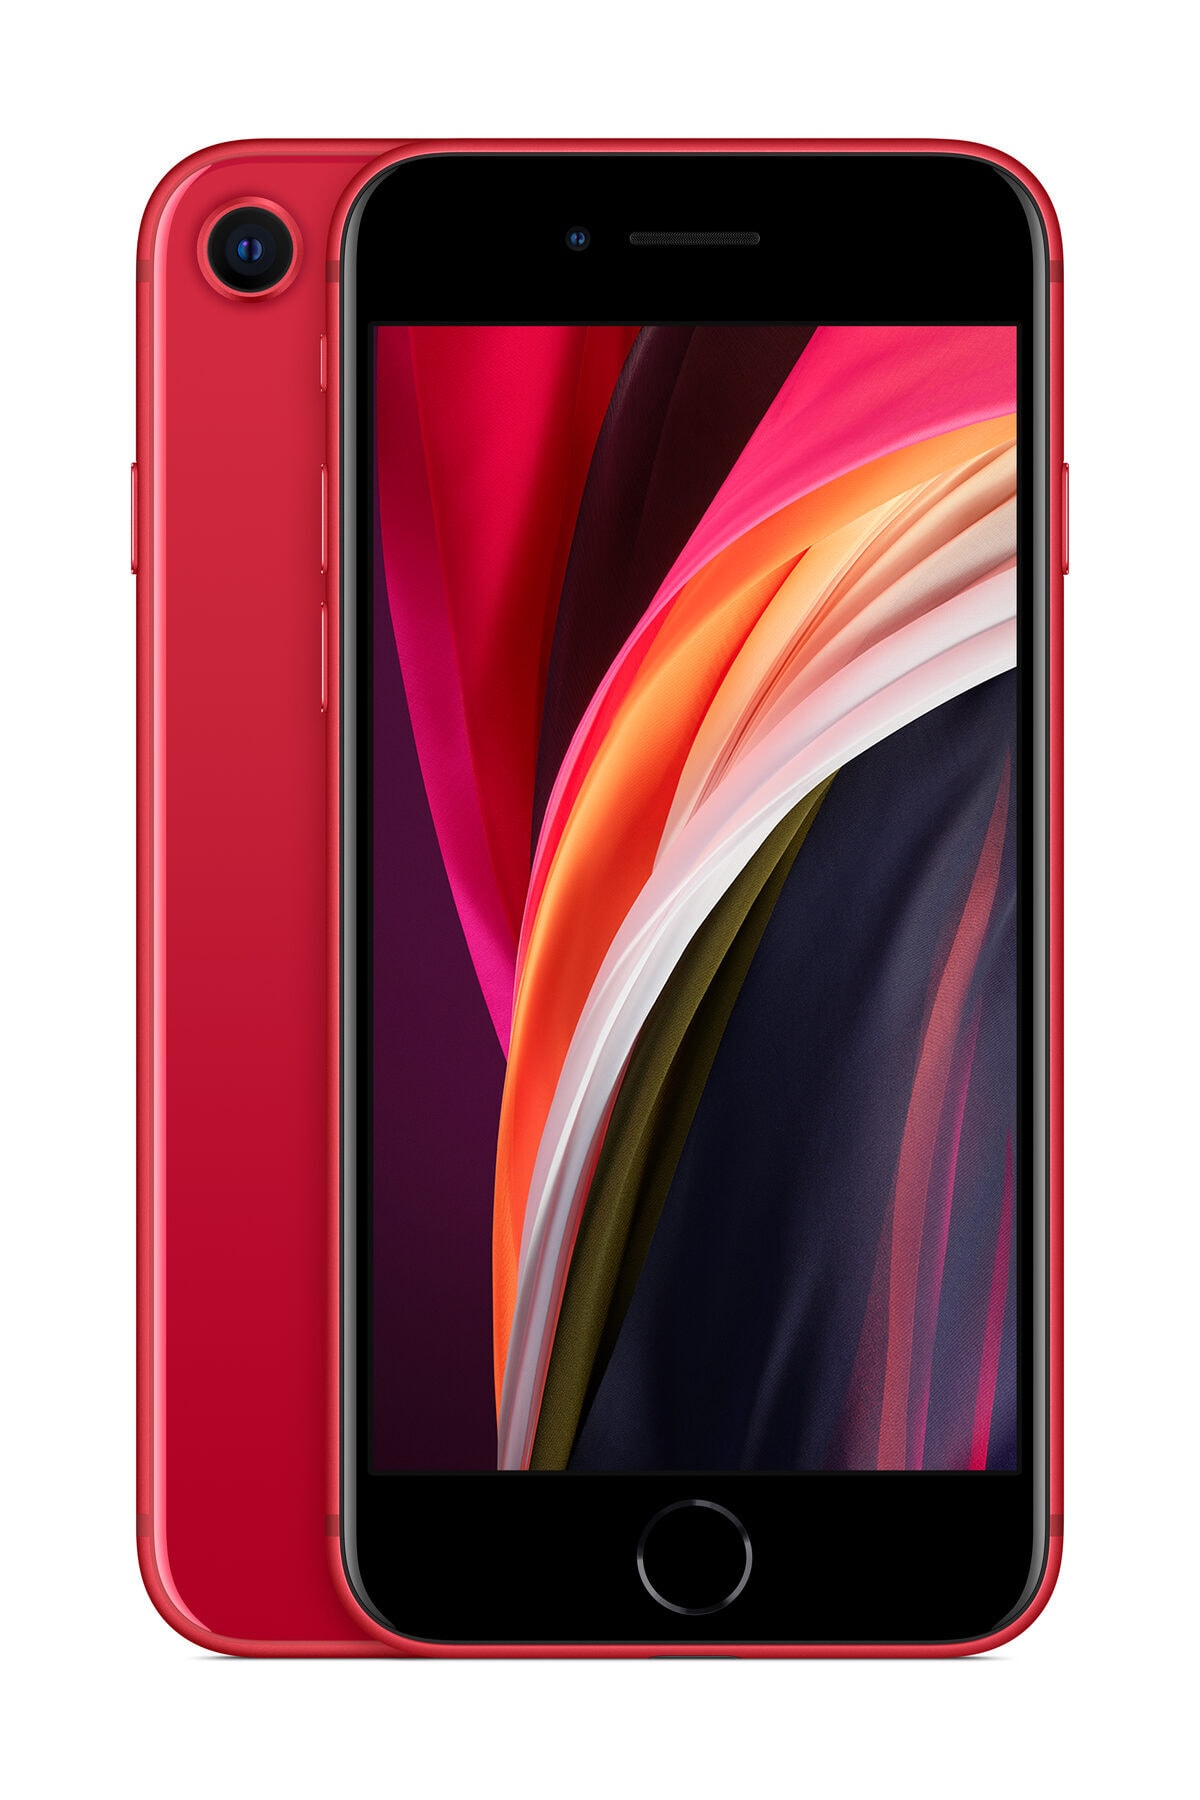 iPhone SE 64GB Kırmızı Cep Telefonu (Apple Türkiye Garantili) Aksesuarsız Kutu